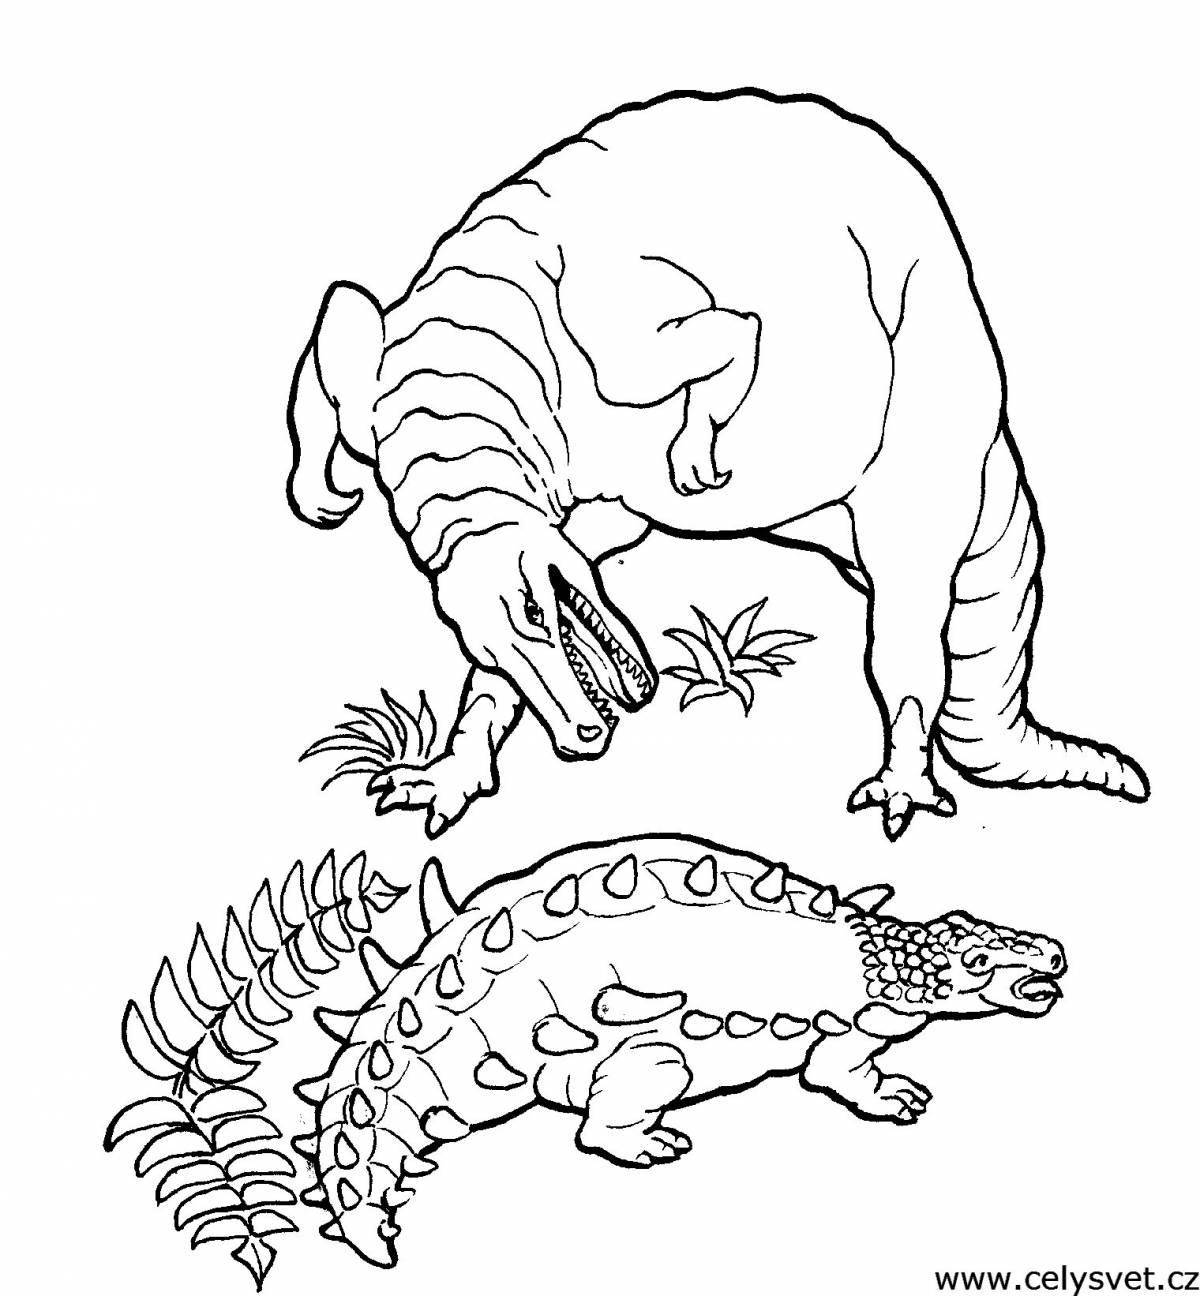 Развлекательная раскраска ankylosaurus для детей